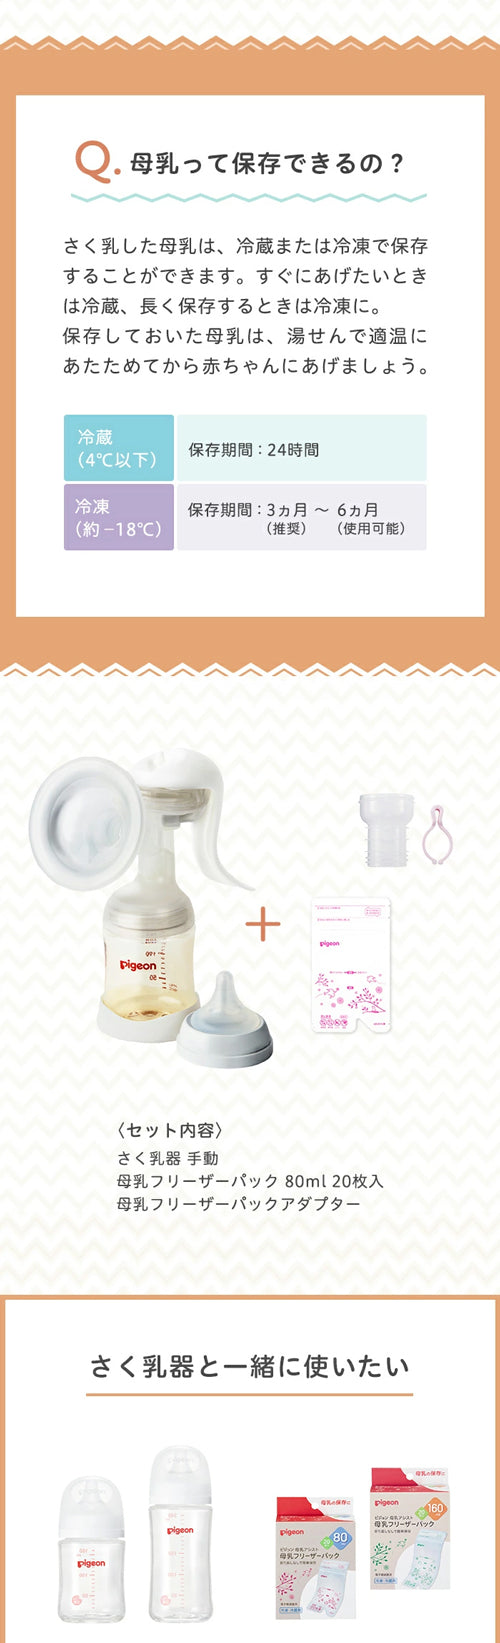 母乳って保存できるの？、セット内容さく乳器手動、母乳フリーザーパック50ml20枚入、母乳フリーザーパックアダプター、さく乳器と一緒に使いたい